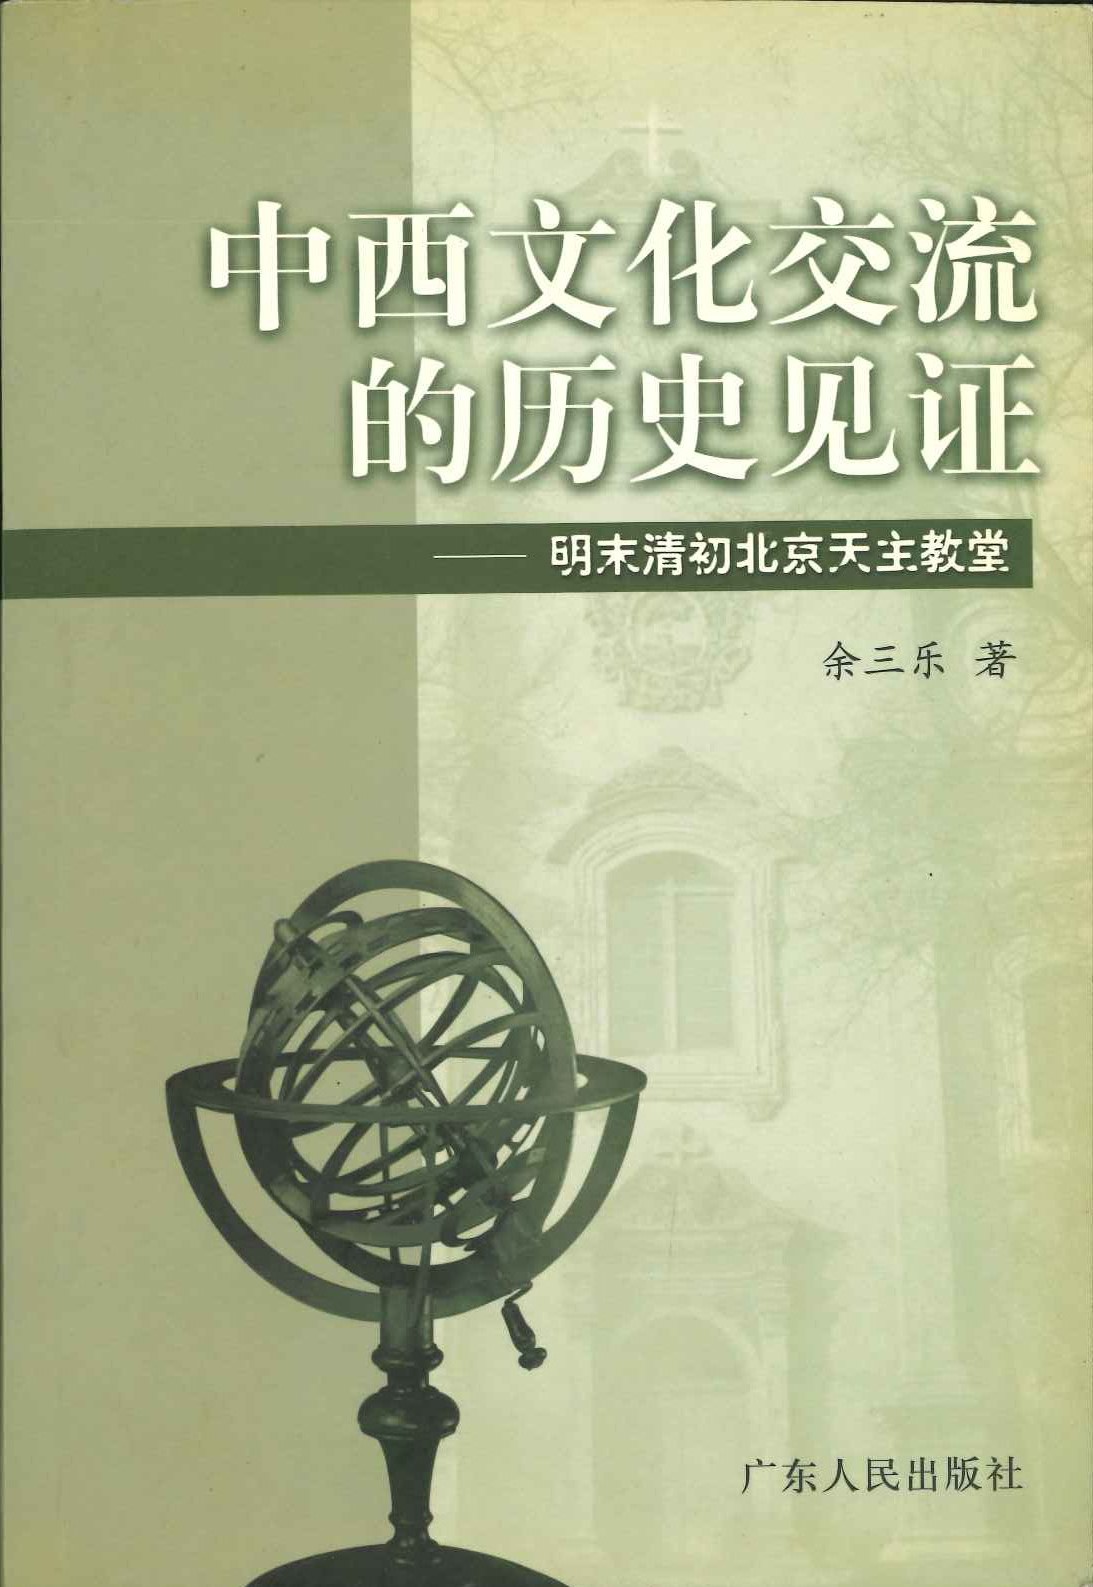 中西文化交流的历史见证 明末清初北京天主教堂